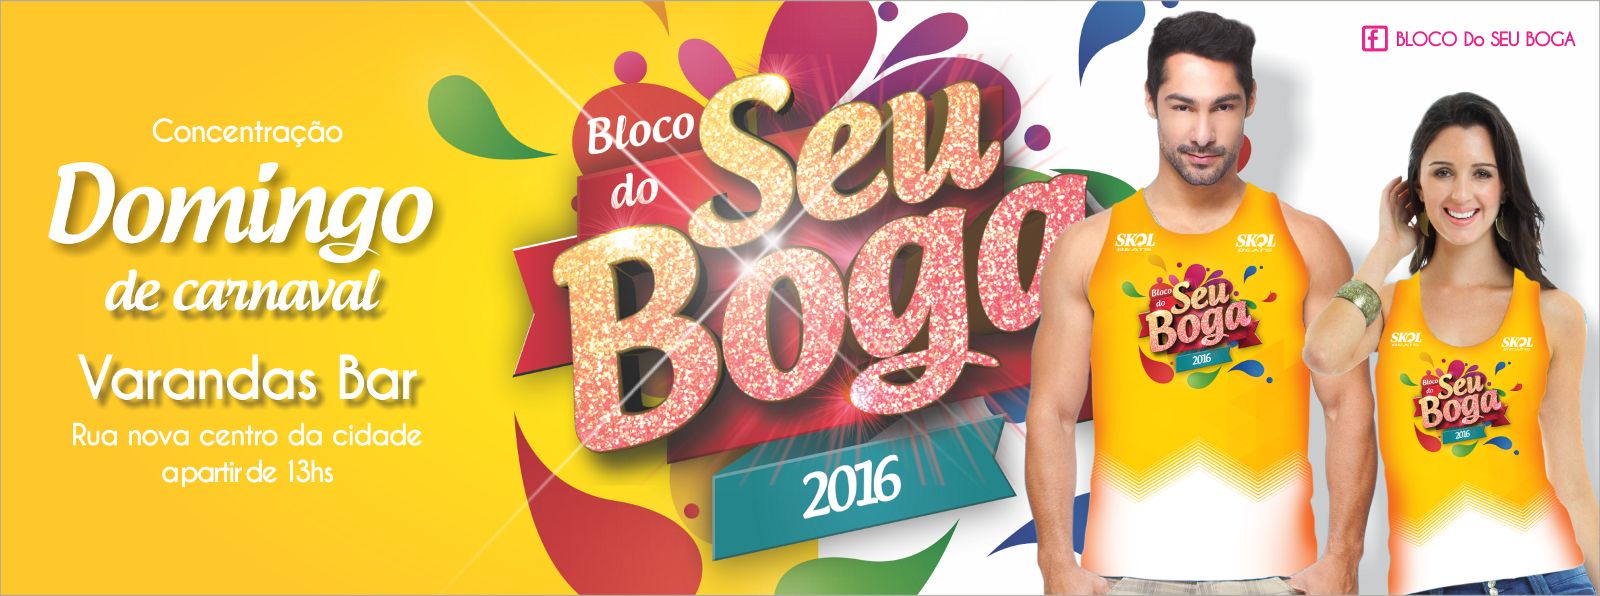 Bloco ‘Seu Boga’ se prepara para sua segunda edição no domingo de carnaval em Pindaré